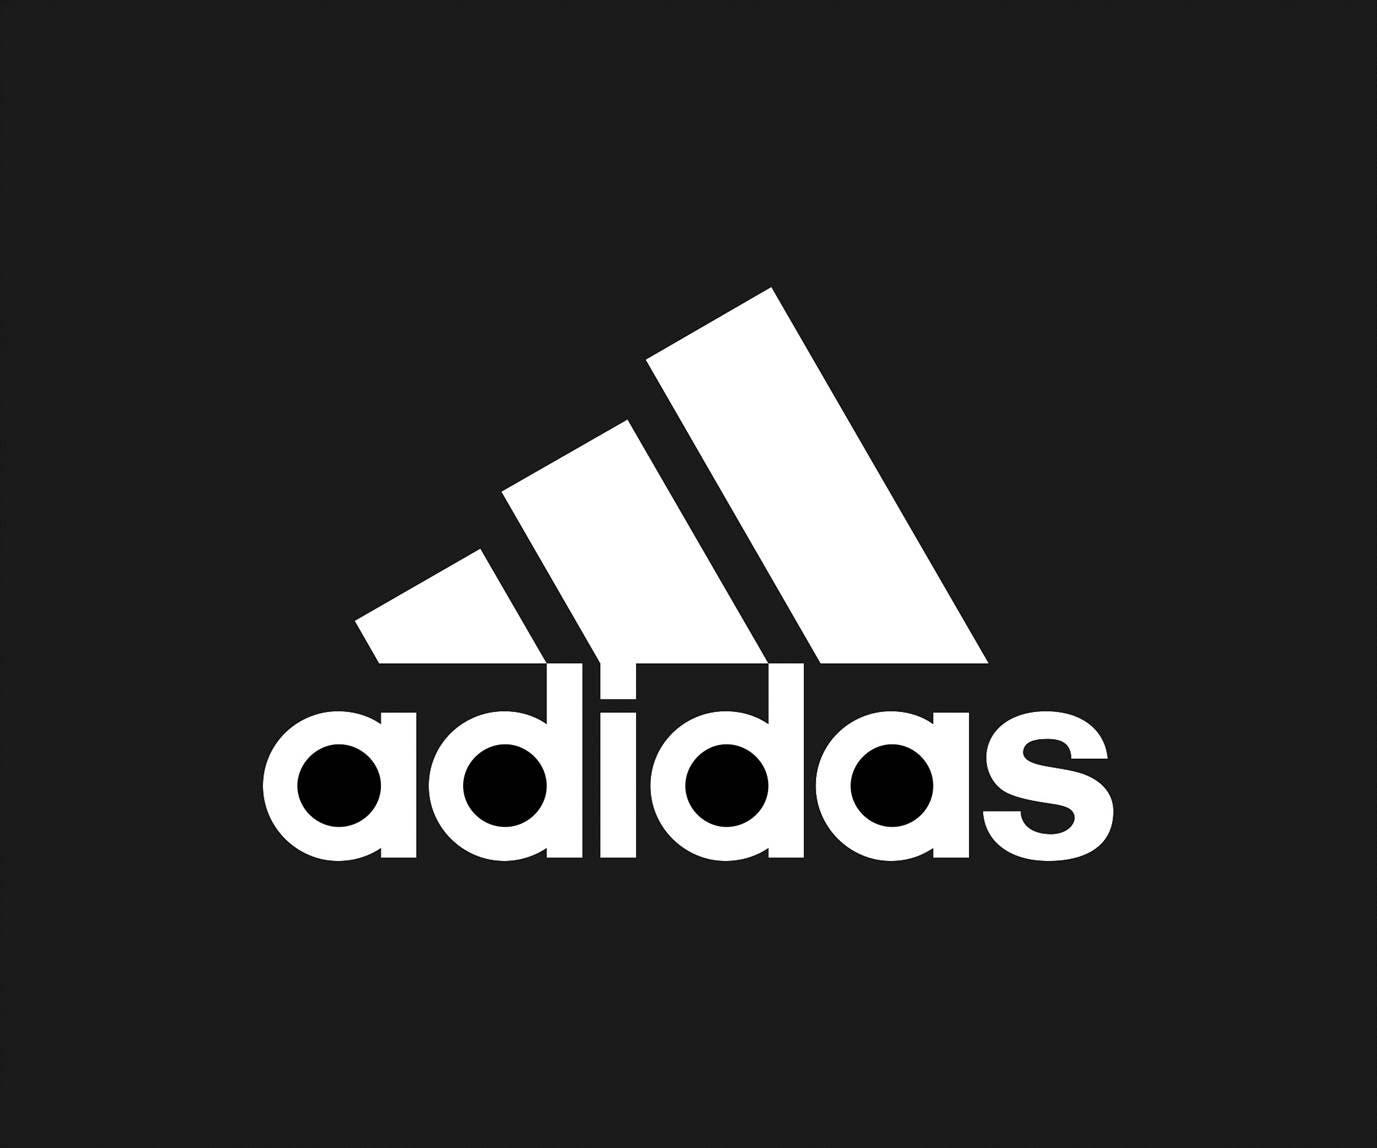 Adidas Boost Logo - adidas boost logo .jpg